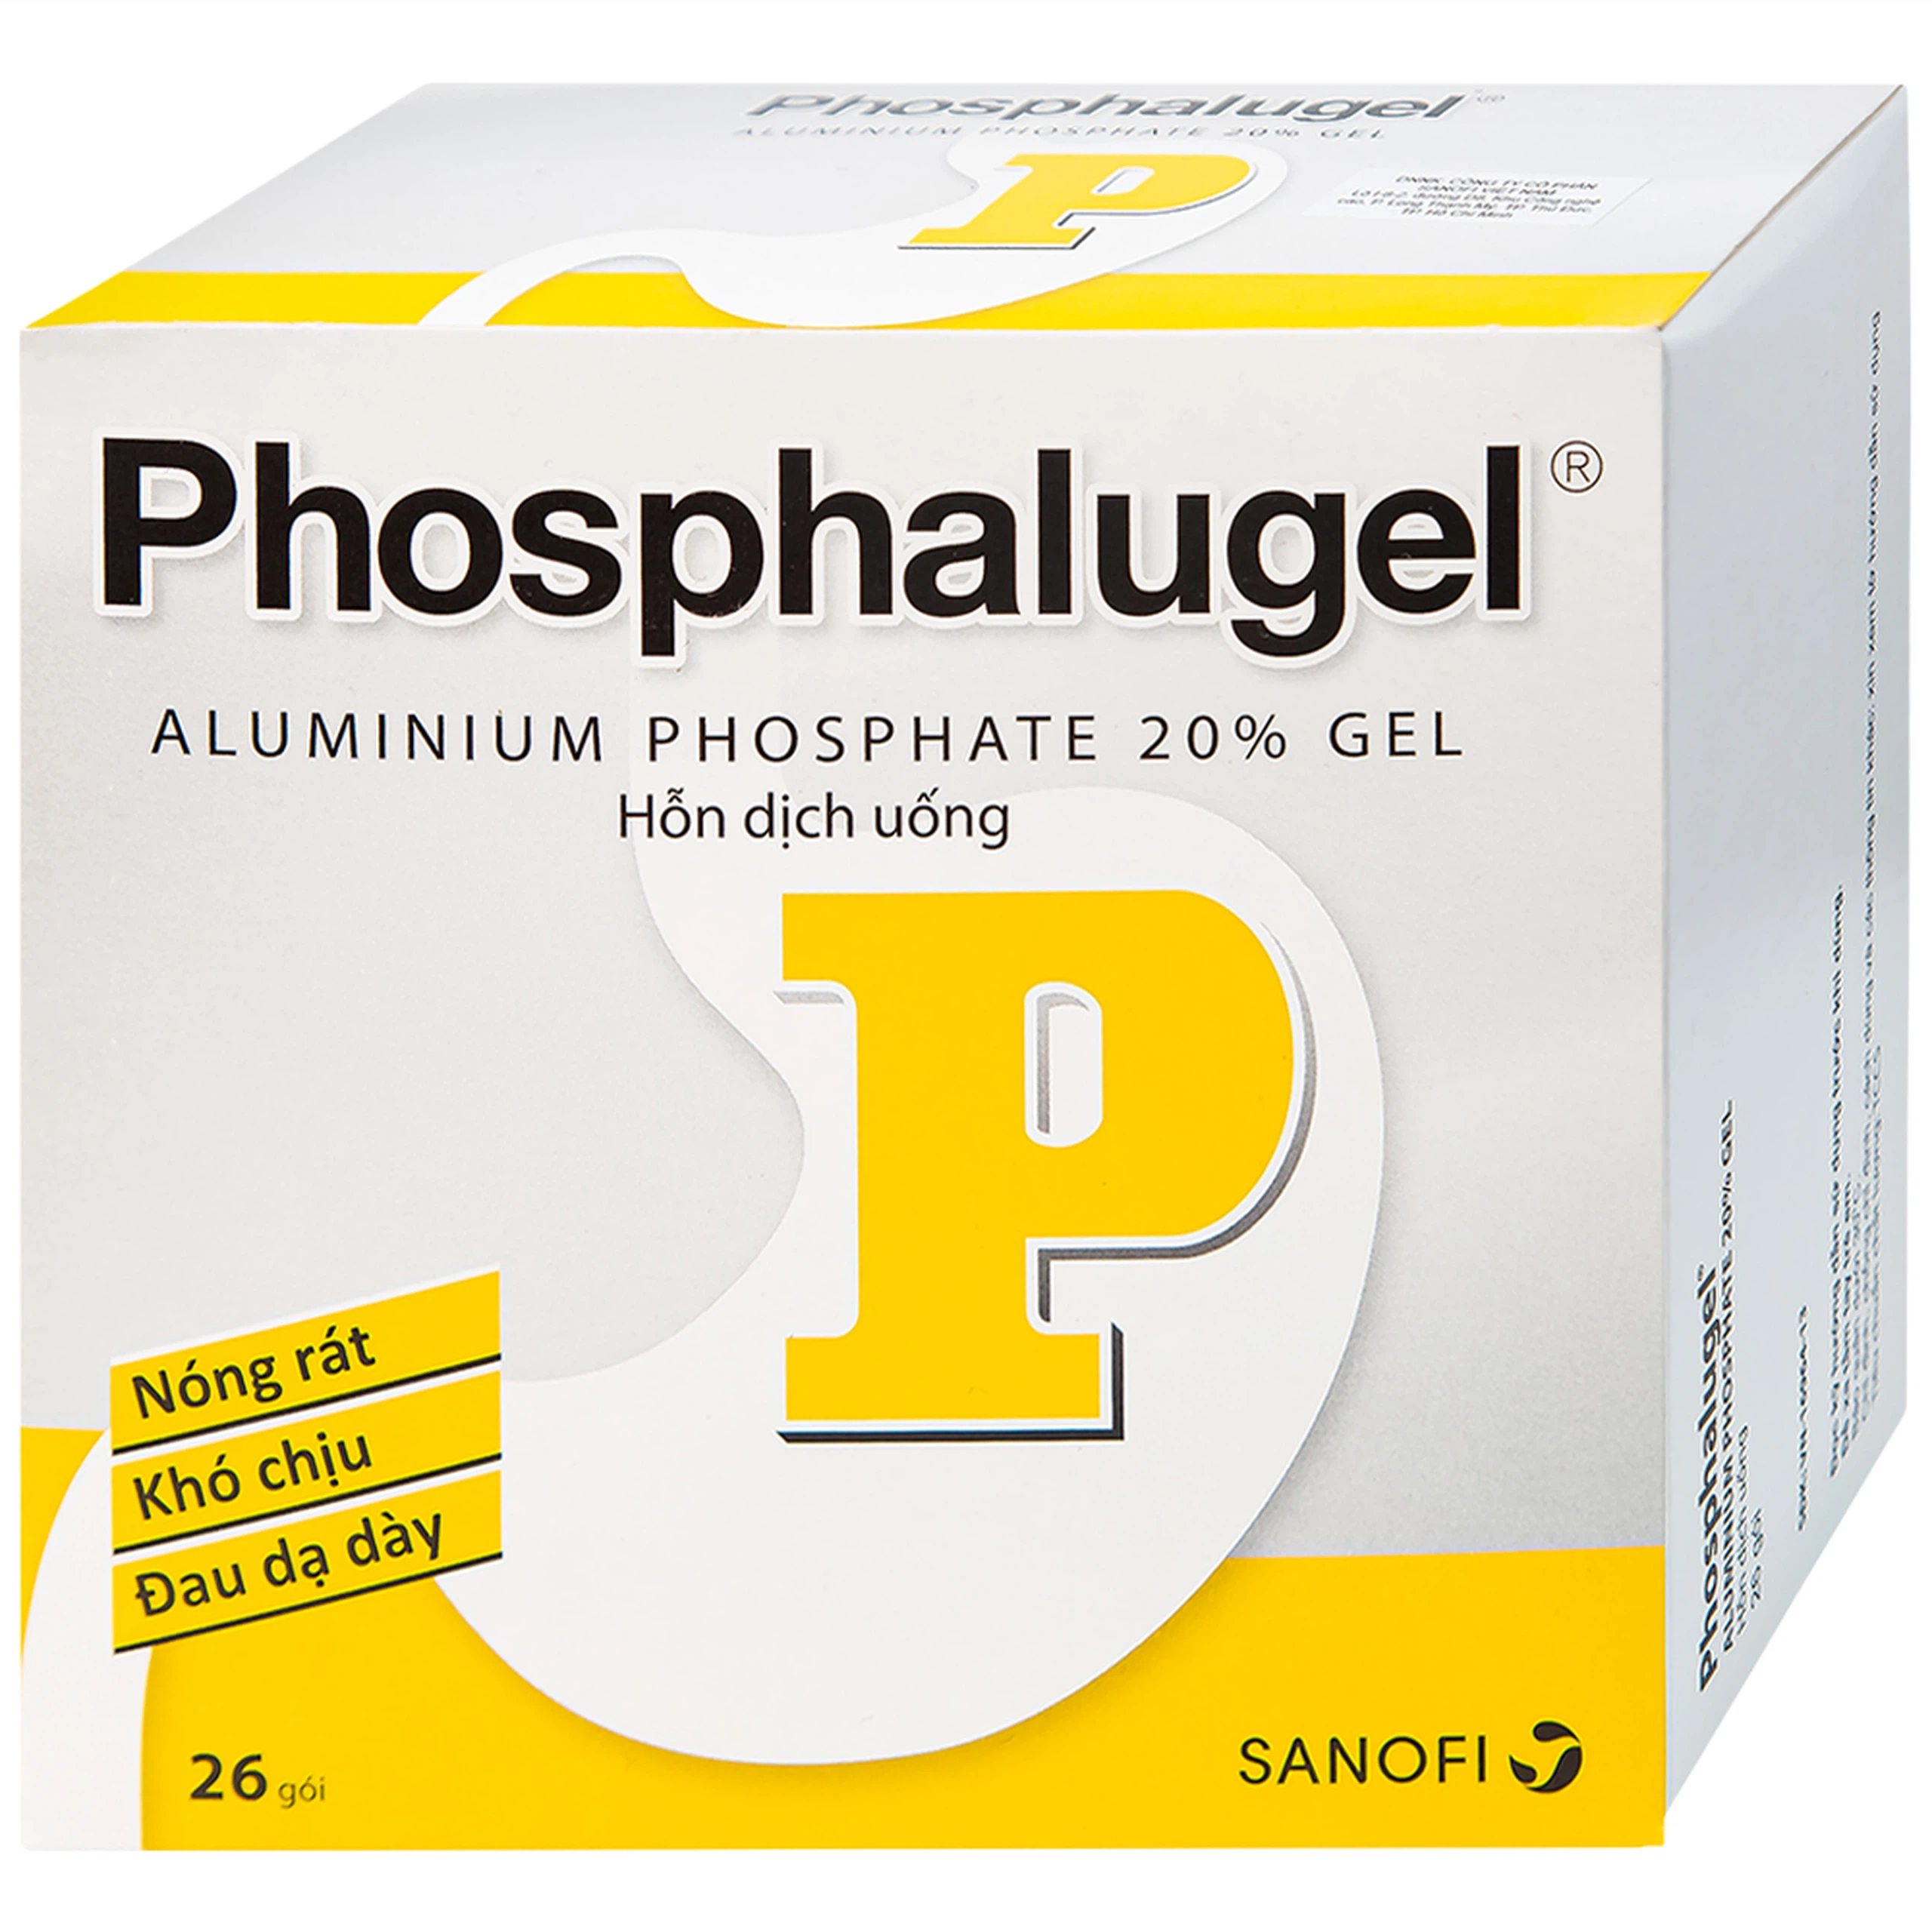 Hỗn dịch uống Phosphalugel Sanofi giảm độ axit của dạ dày (26 gói x 20g)